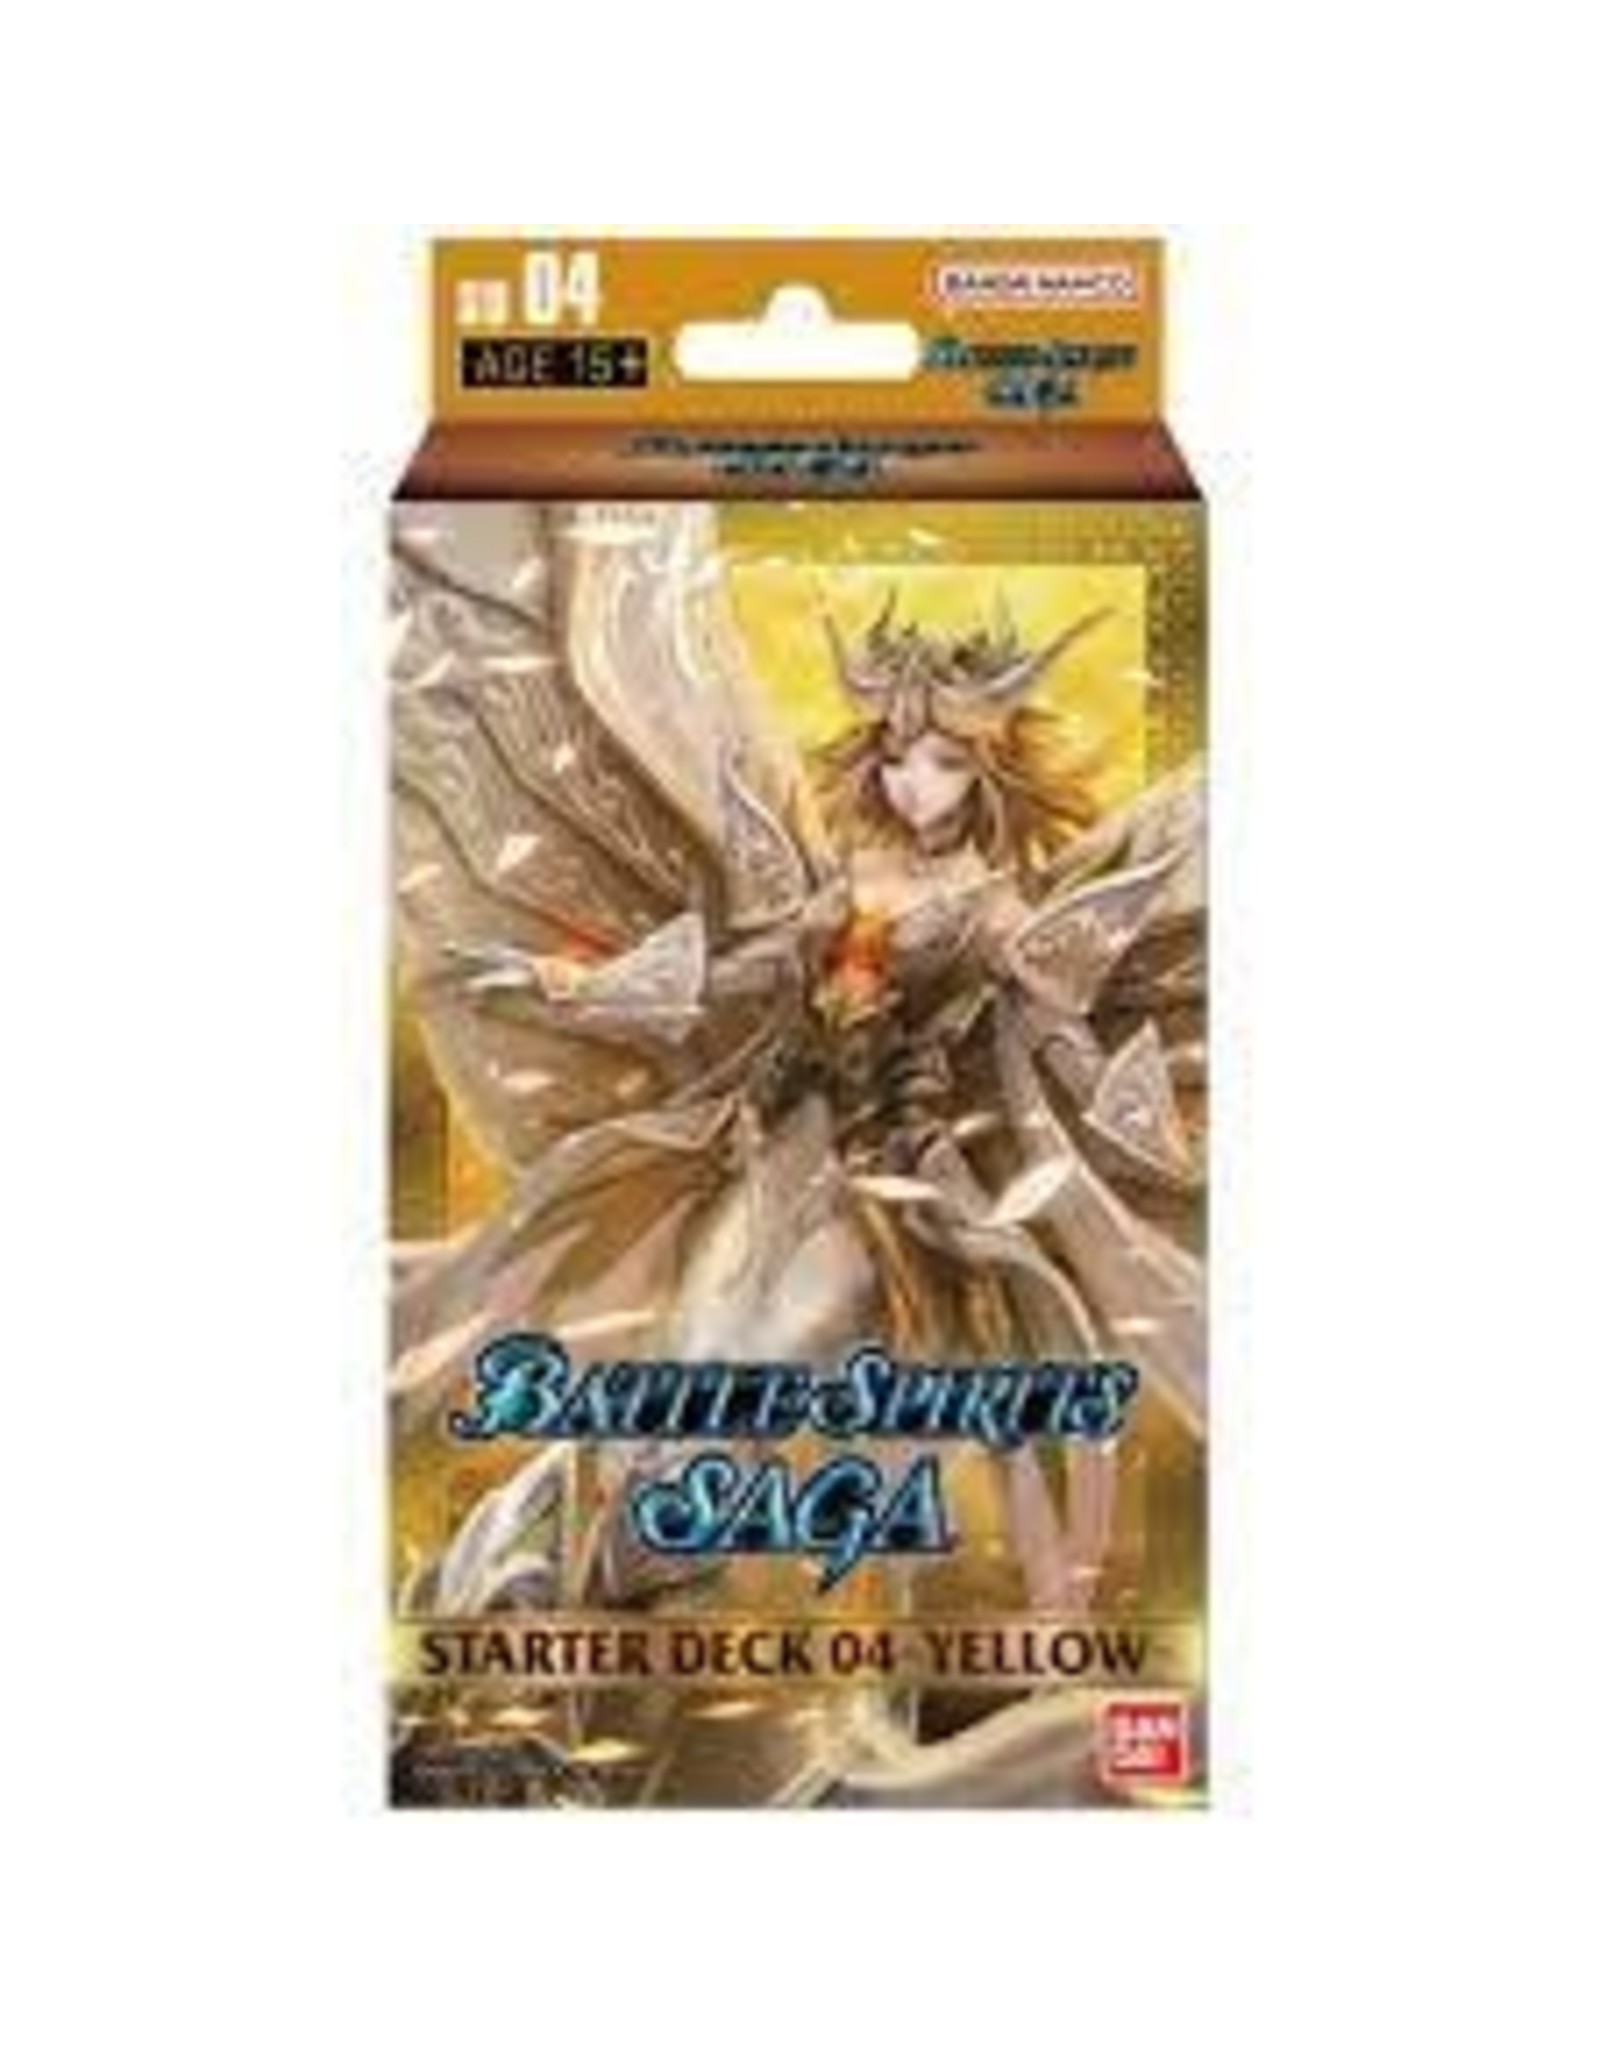 Battle Spirits Battle Spirits Saga Card Game: Starter Deck 04 Display (6) [Bsssd04]